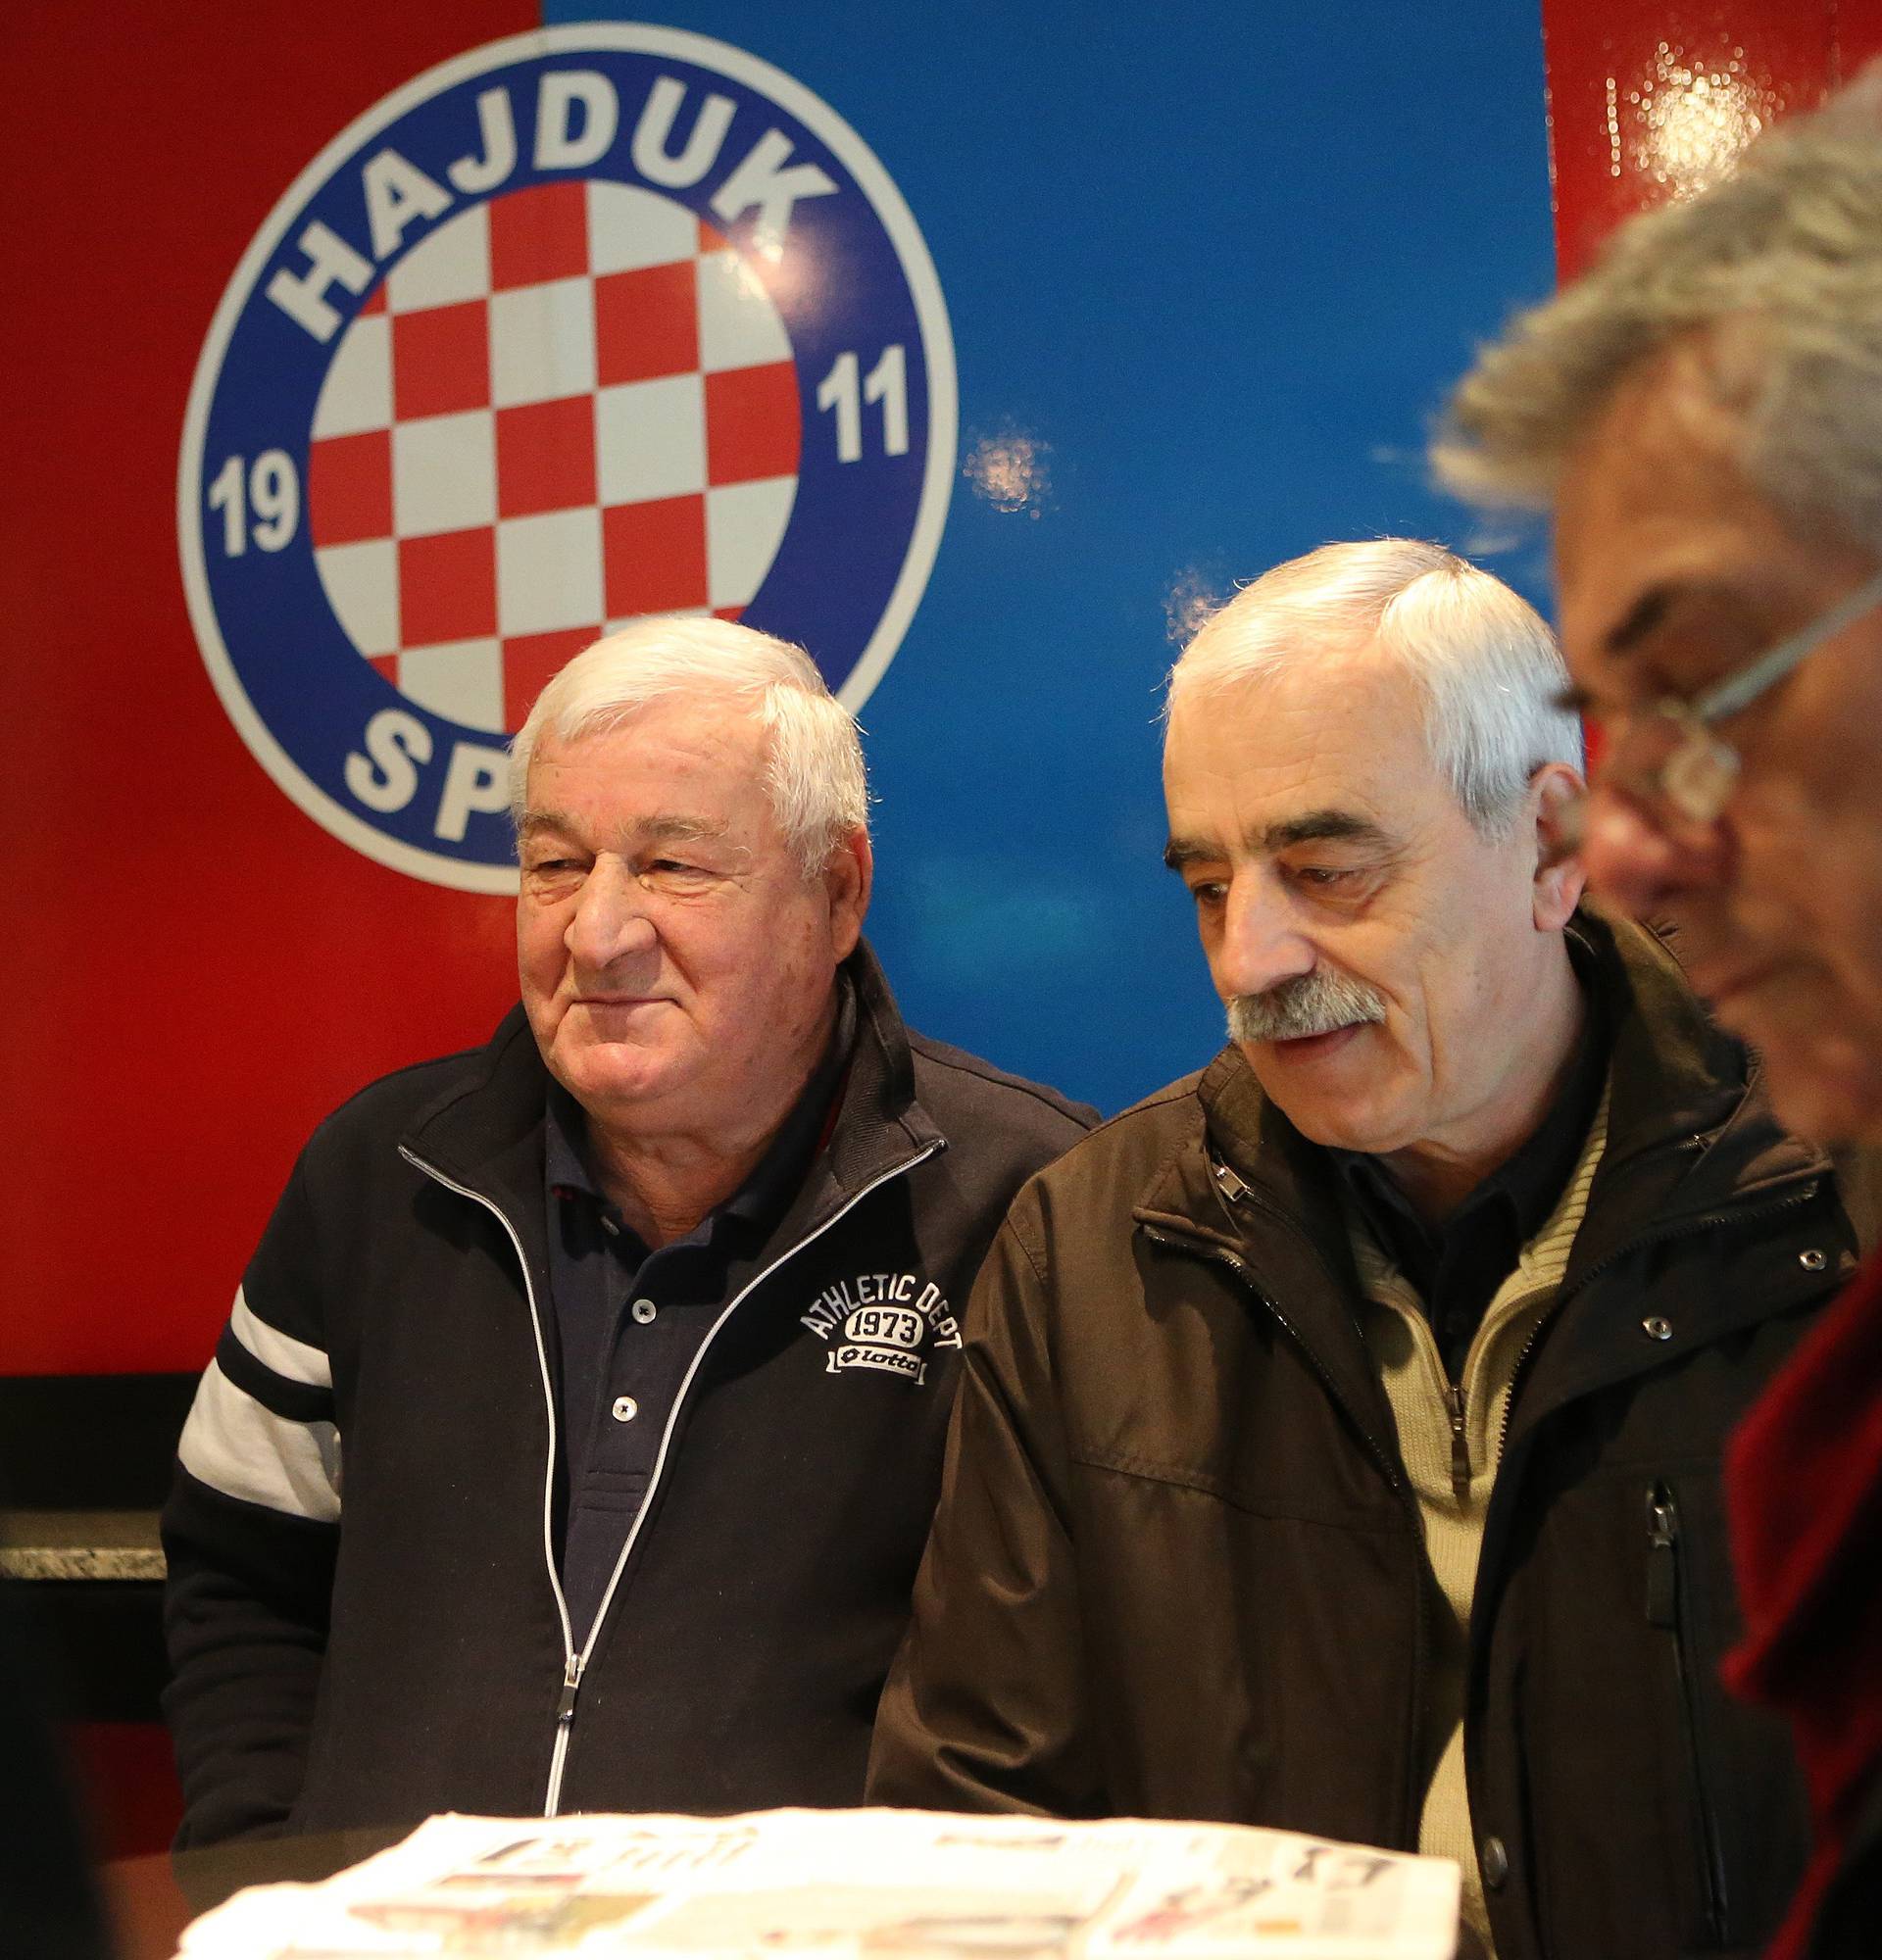 Preminula je legenda Hajduka: Zvonko Bego umro u 78. godini